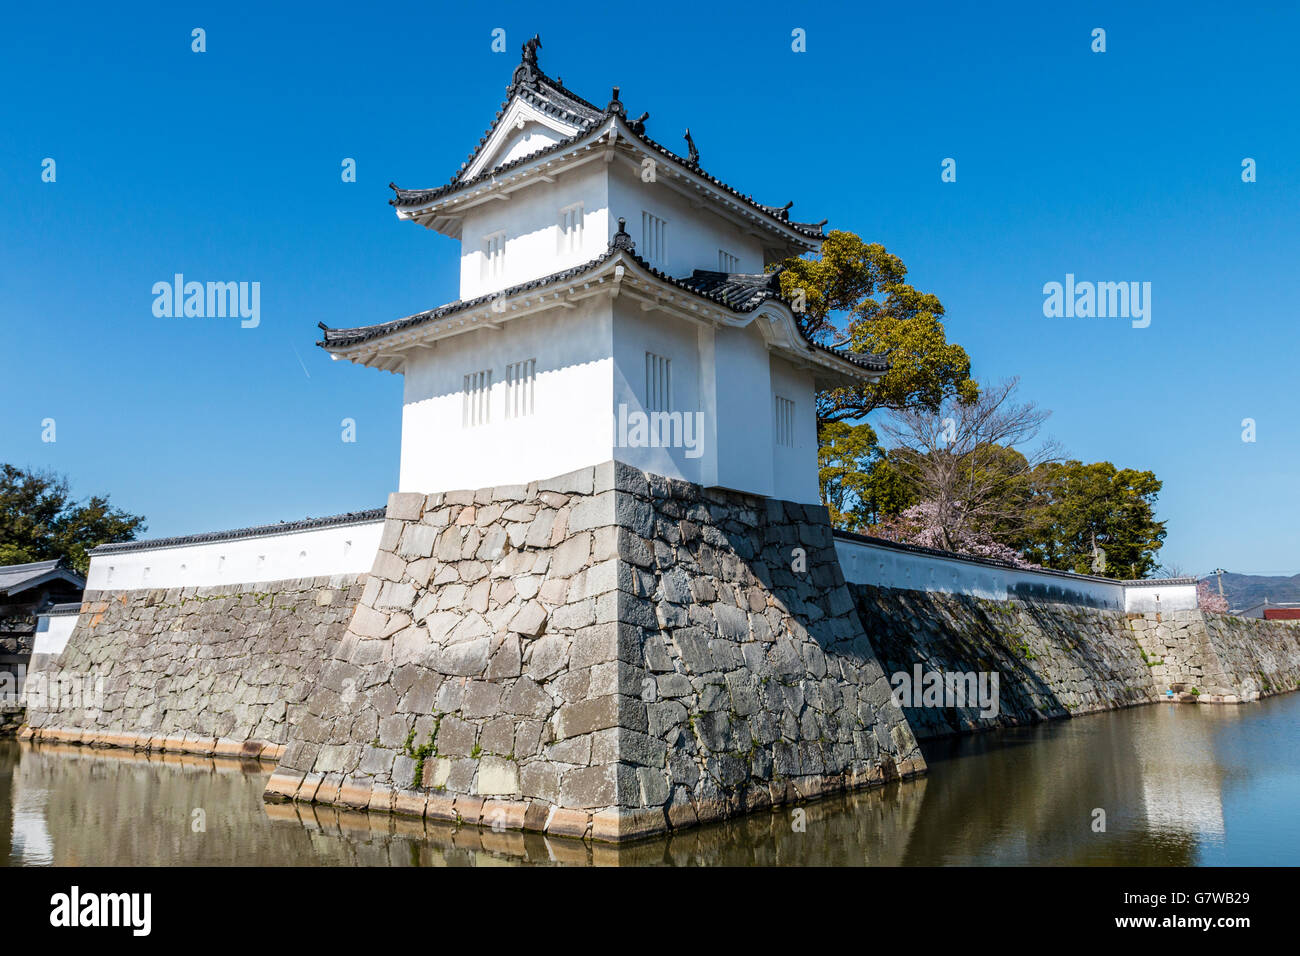 Japan, Ako castle. Ote sumi yaragu, 2 storey turret, tower. Moat and dobei white plaster and Ishigaki stone walls. Daytime, sunshine. Blue sky. Stock Photo